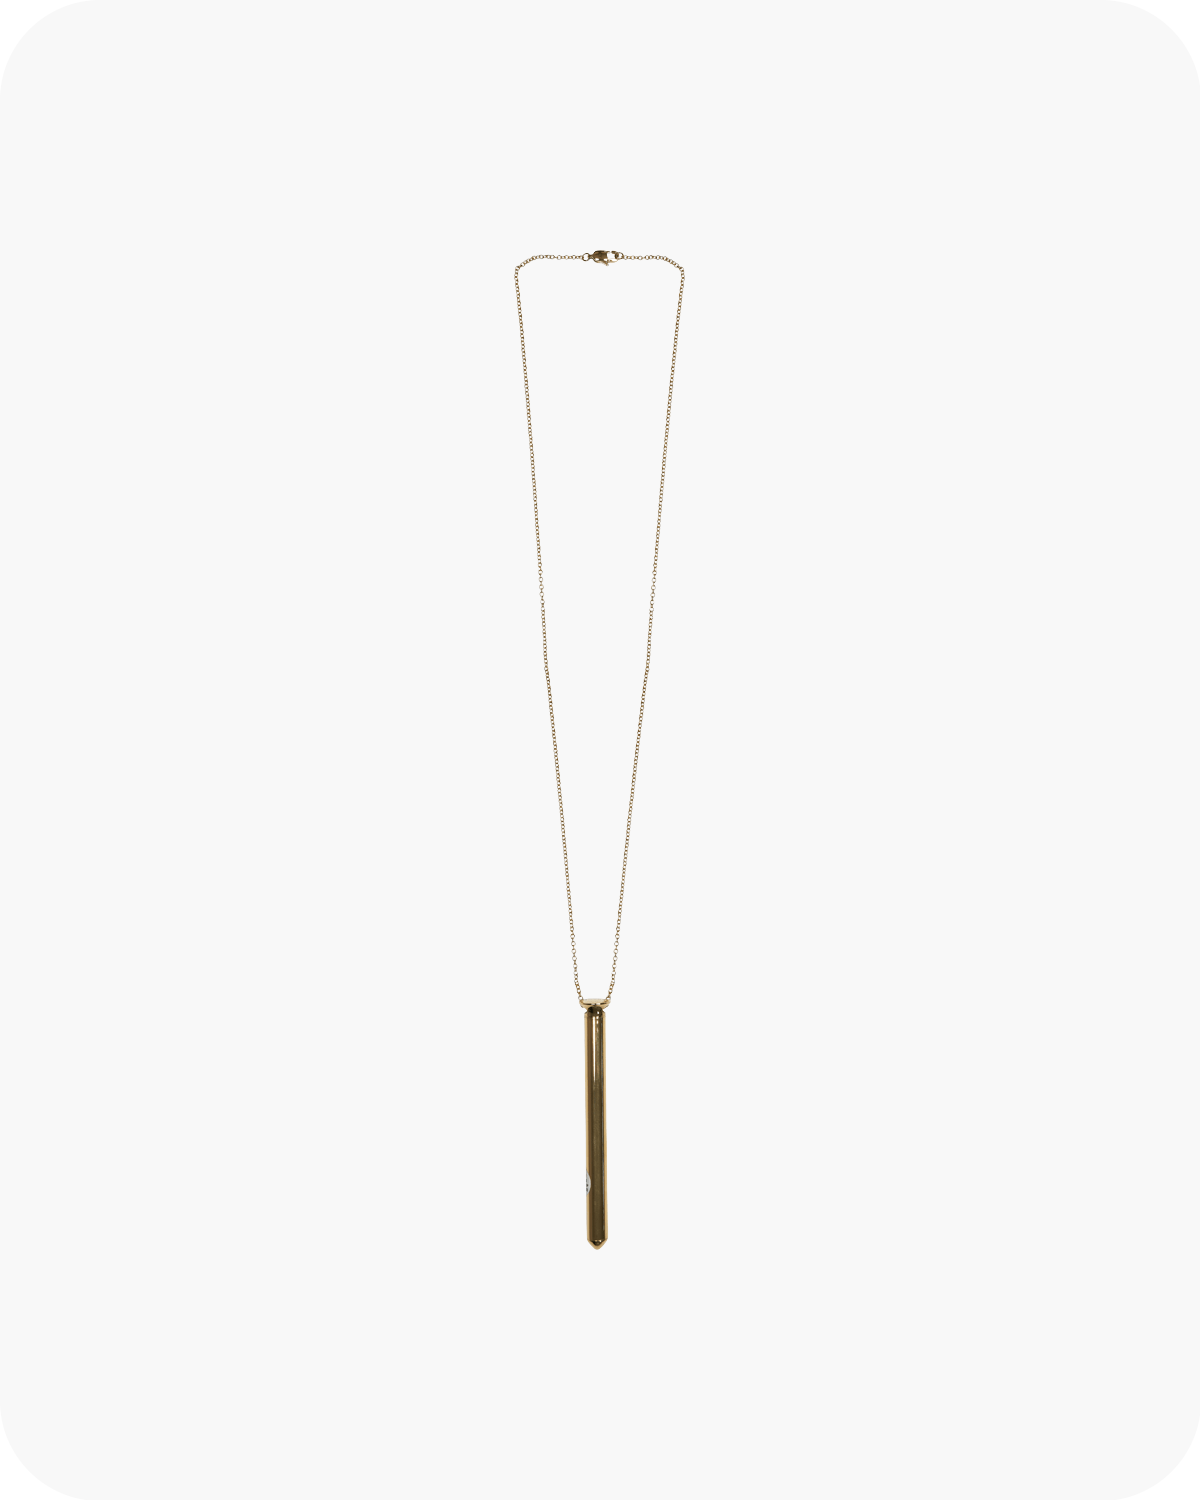 vesper vibrating necklace - Fannie - Gold